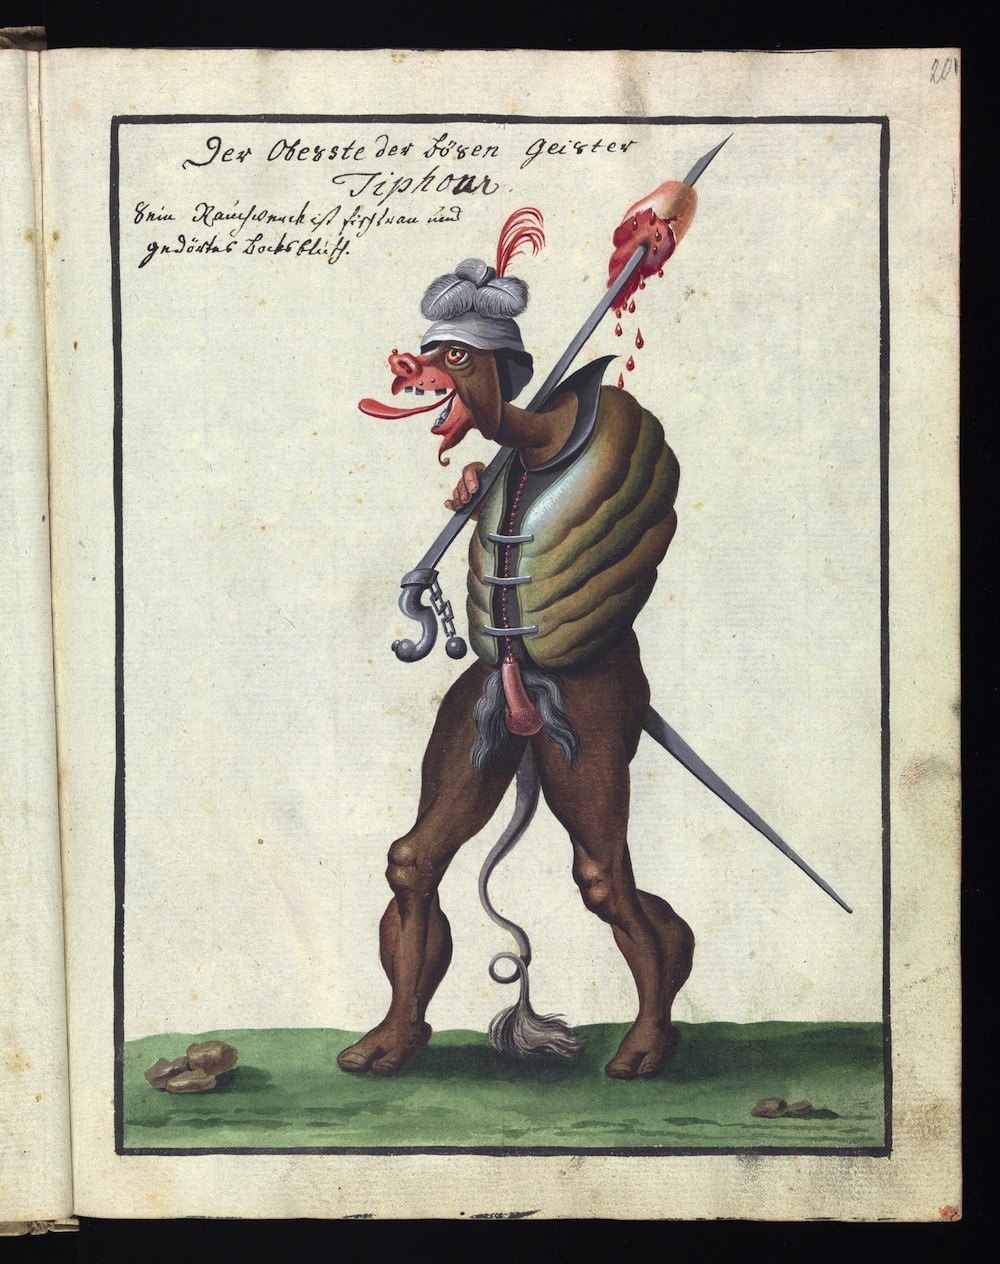 ompendium rarissimum totius Artis Magicae sistematisatae per celeberrimos Artis hujus Magistros, a book of "Satanic" illustrations from the 18th century 